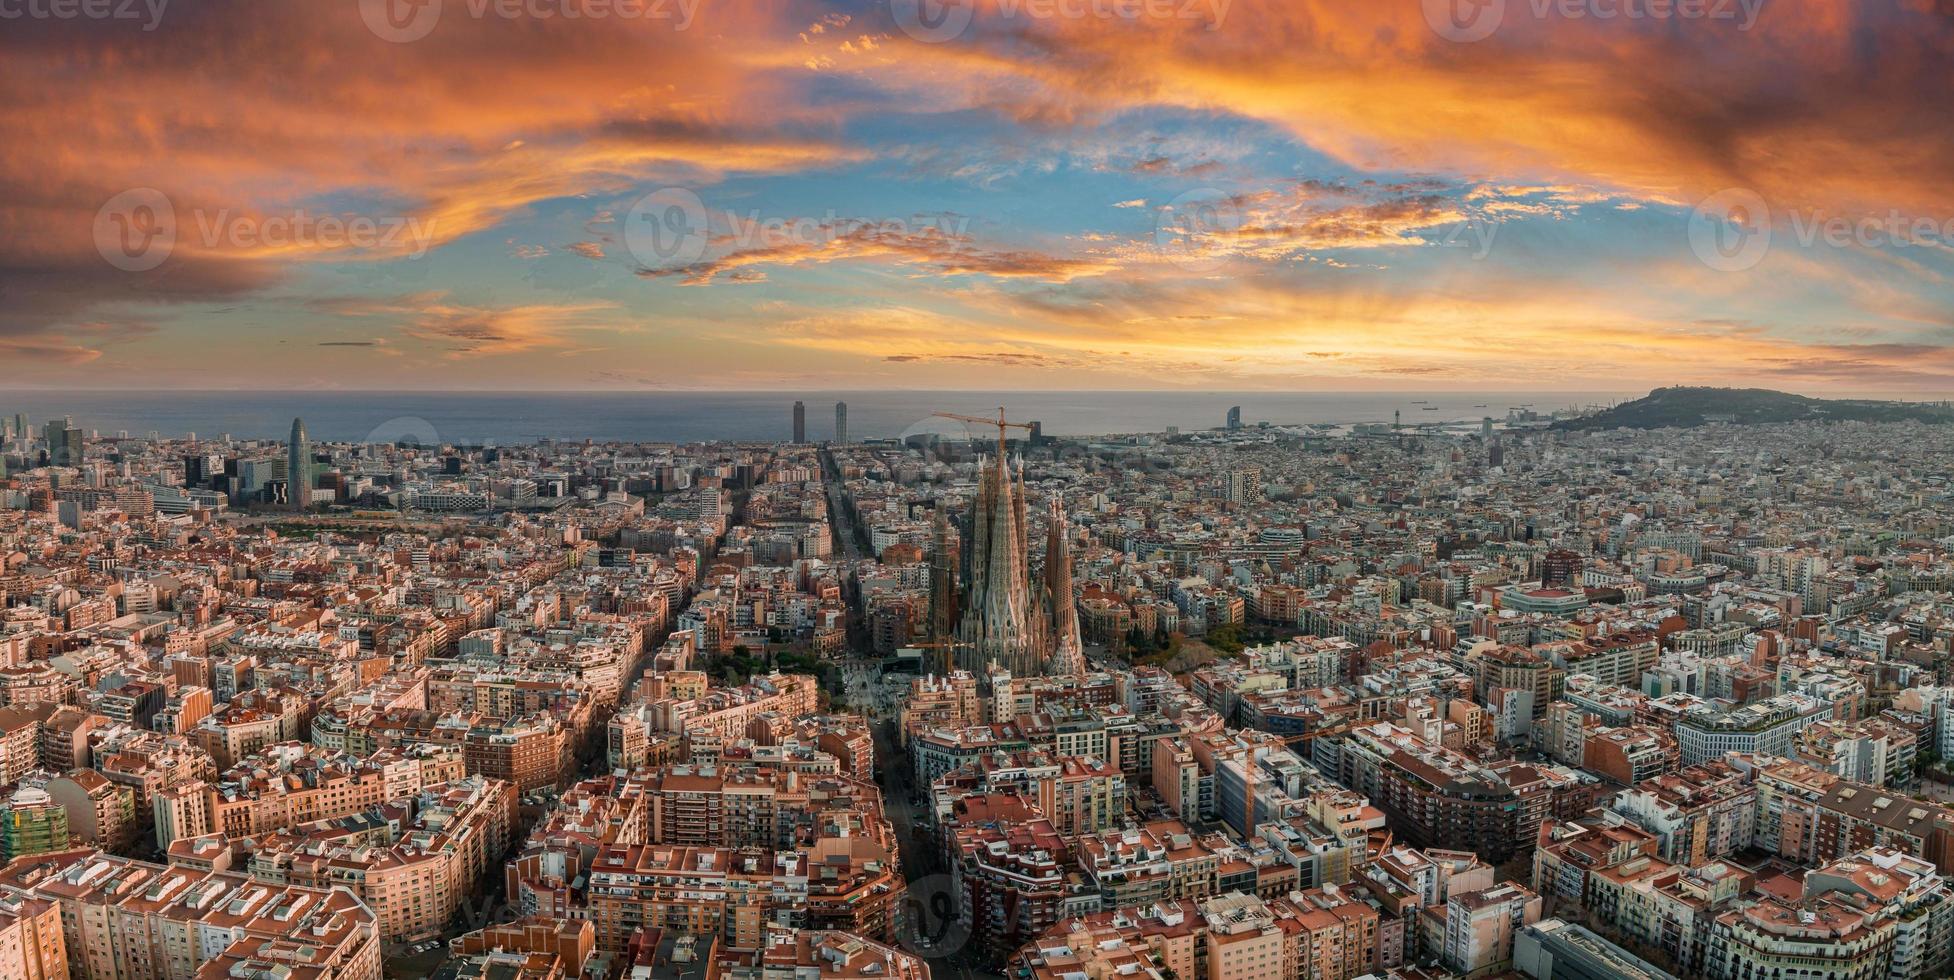 antenne visie van Barcelona stad horizon en sagrada familia kathedraal Bij zonsondergang. foto